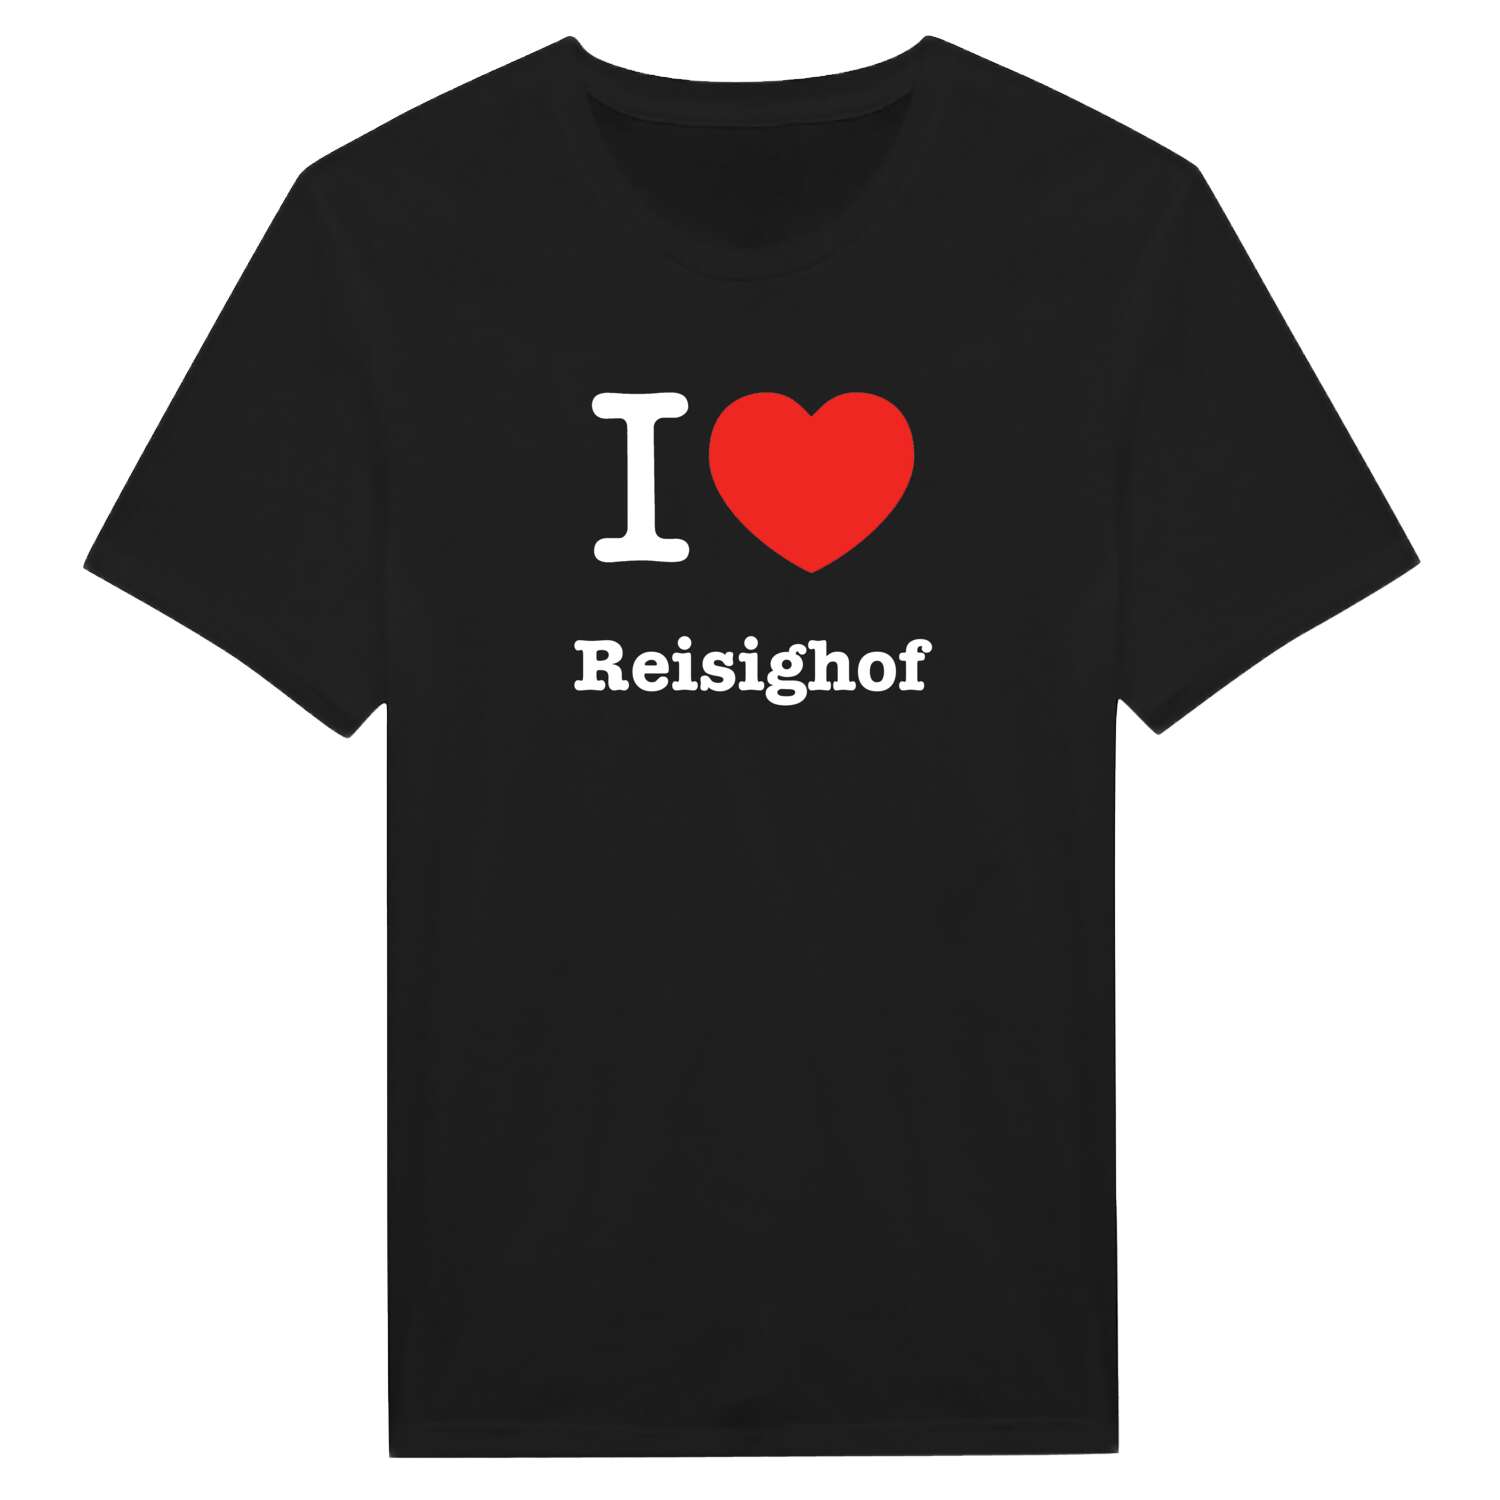 Reisighof T-Shirt »I love«